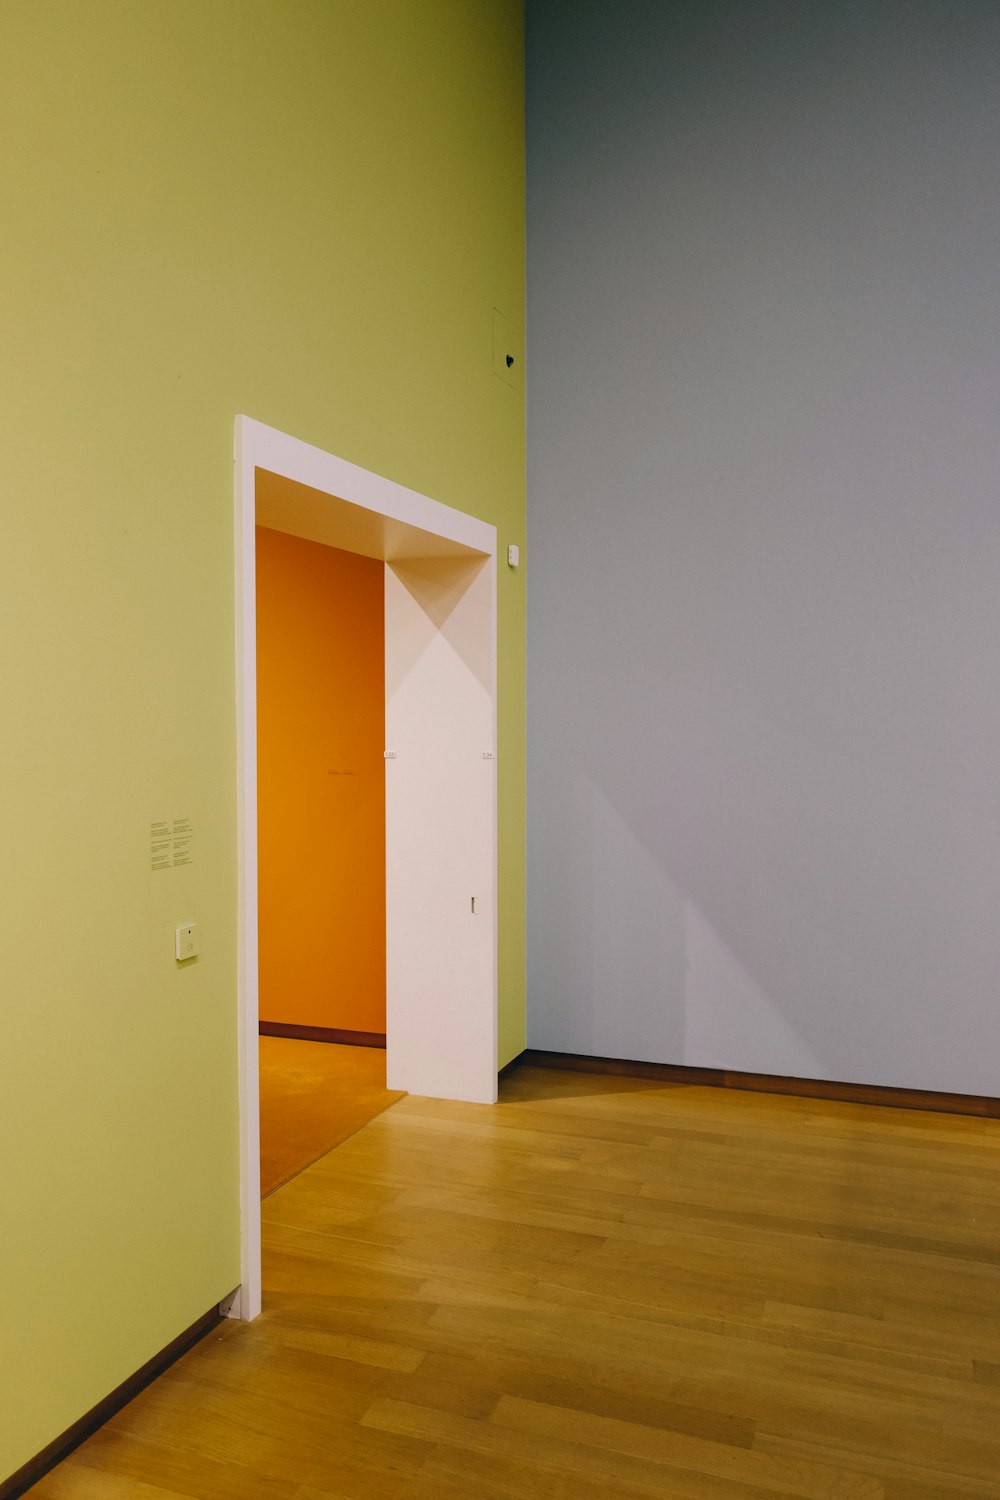 Un pasillo con una puerta